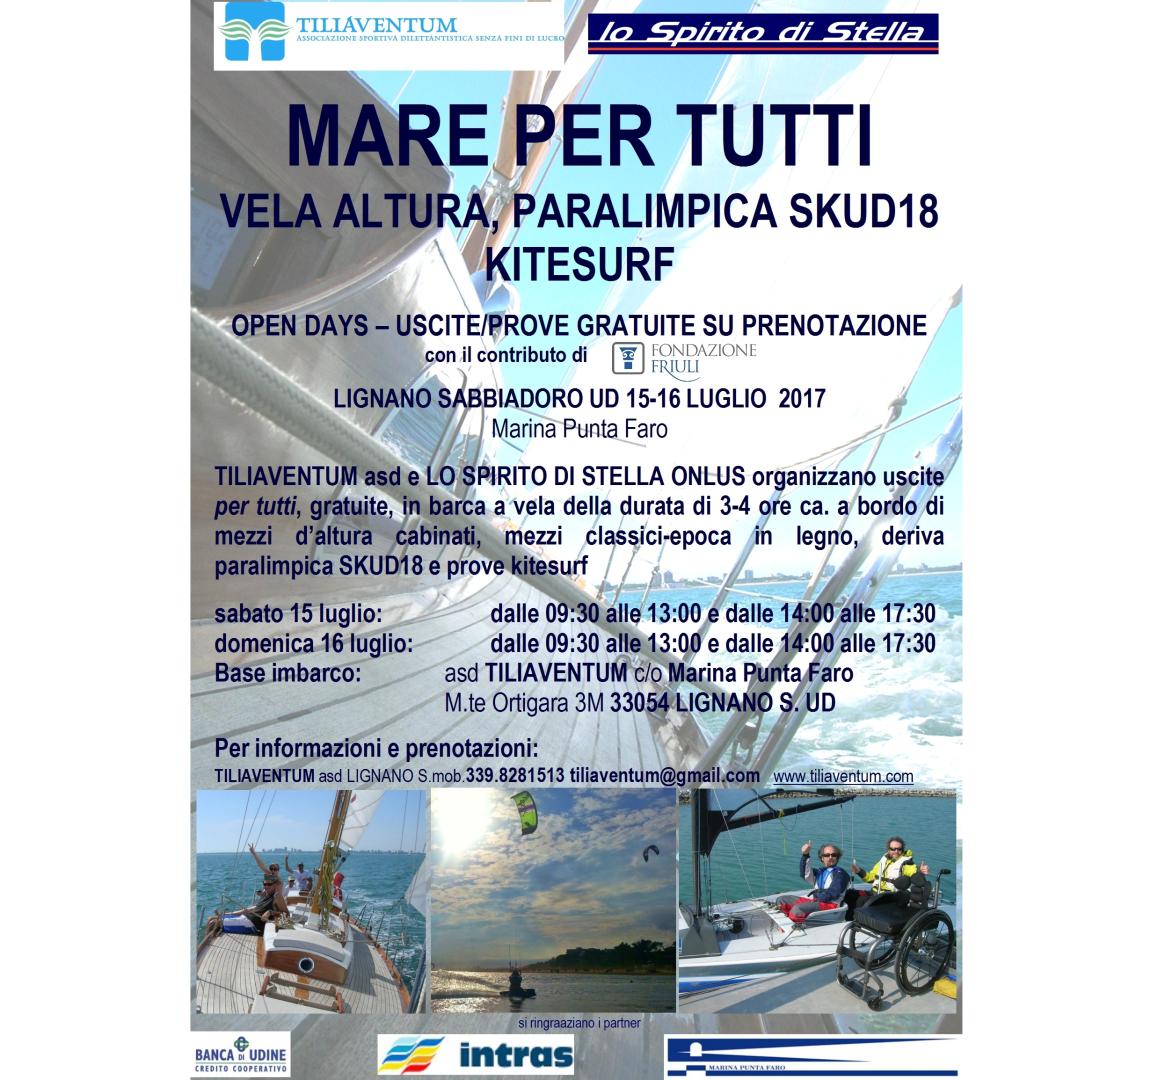 Open Day Mare Per Tutti Tiliaventum 1 e 15 settembre S.UD